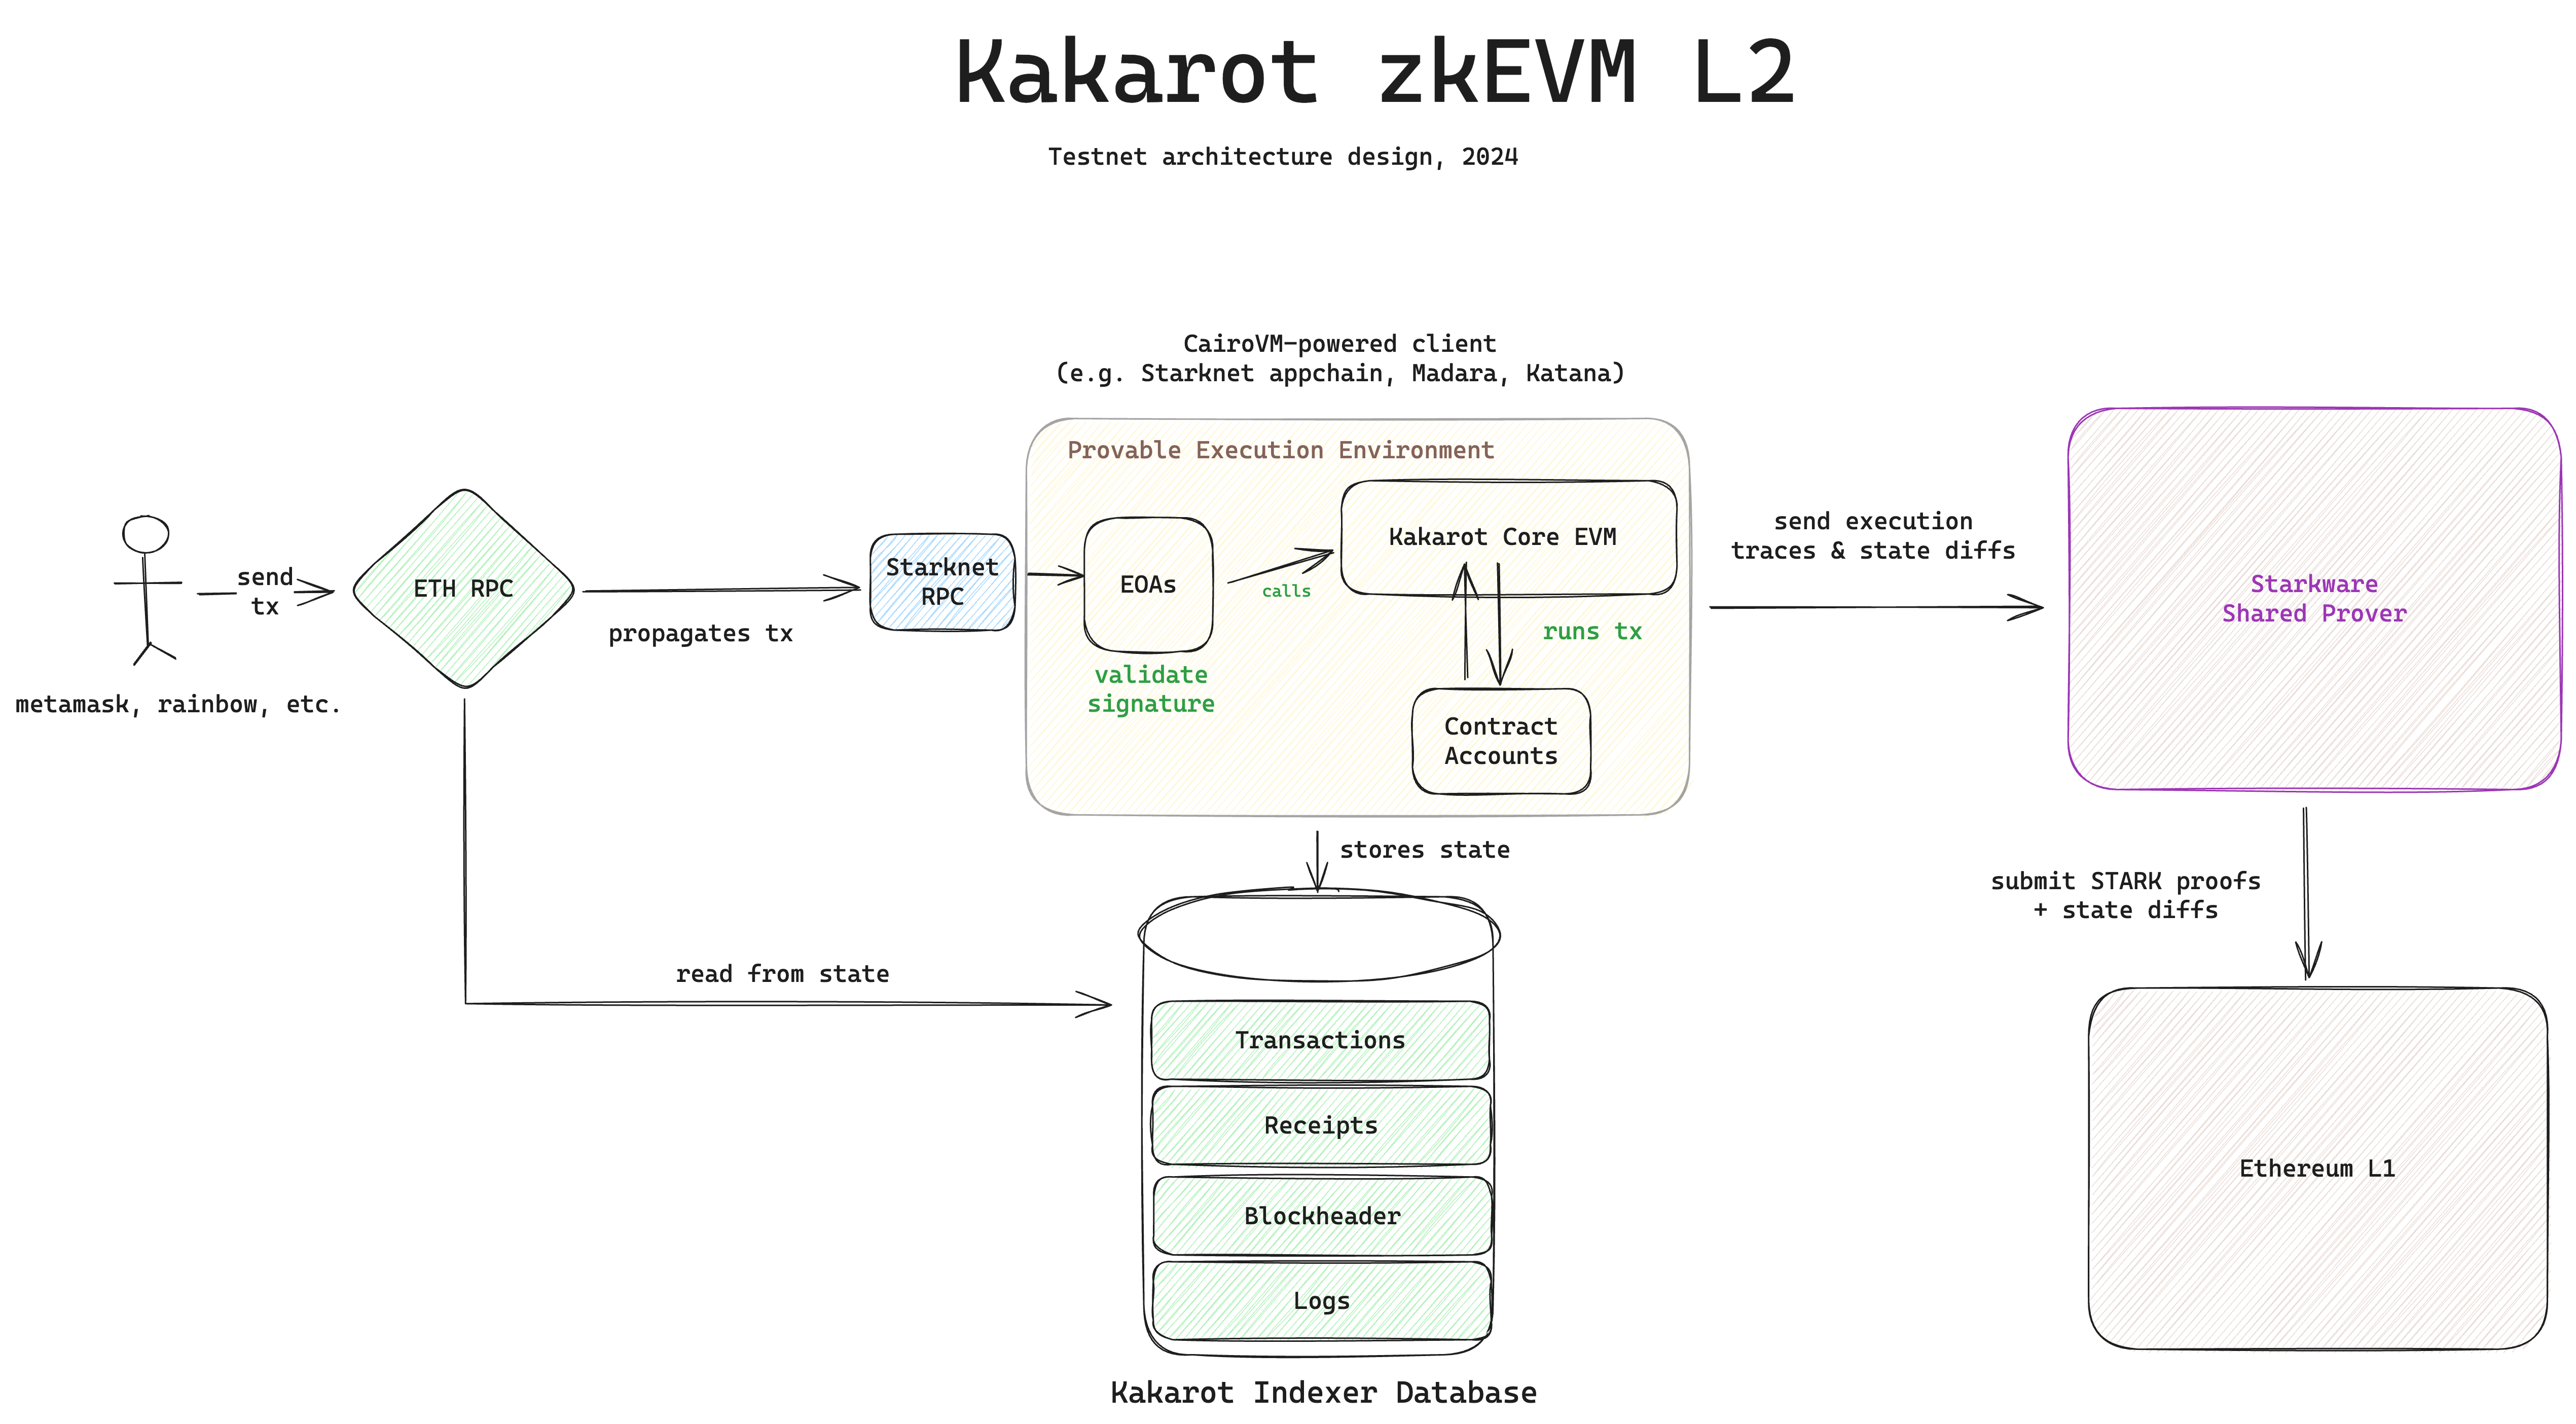 Kakarot zkEVM architecture